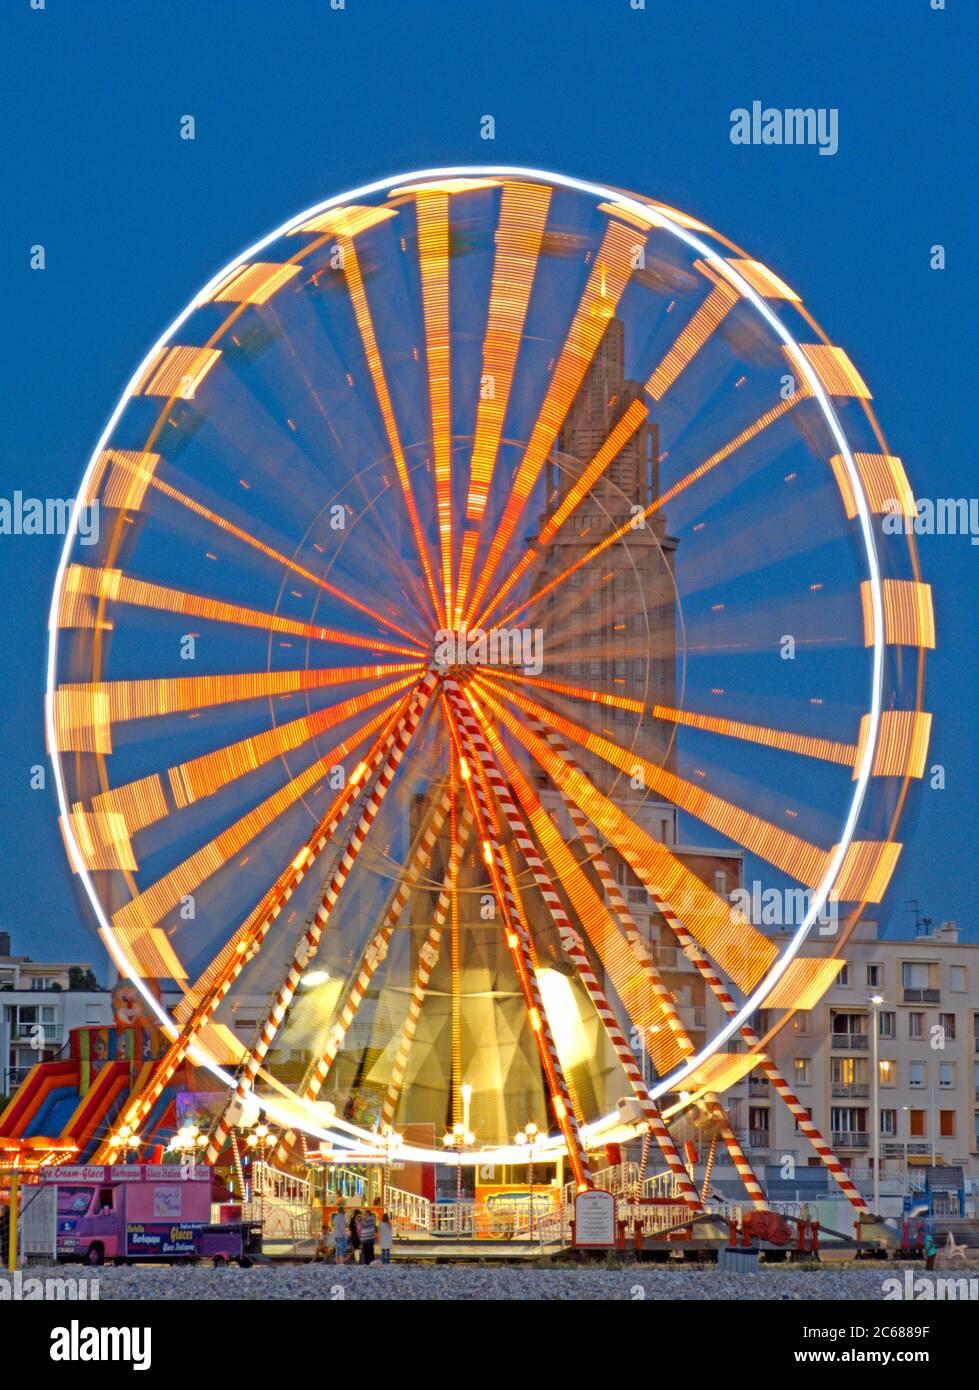 Langzeitbelichtung des beleuchteten Riesenrads, Le Havre, Frankreich Stockfoto